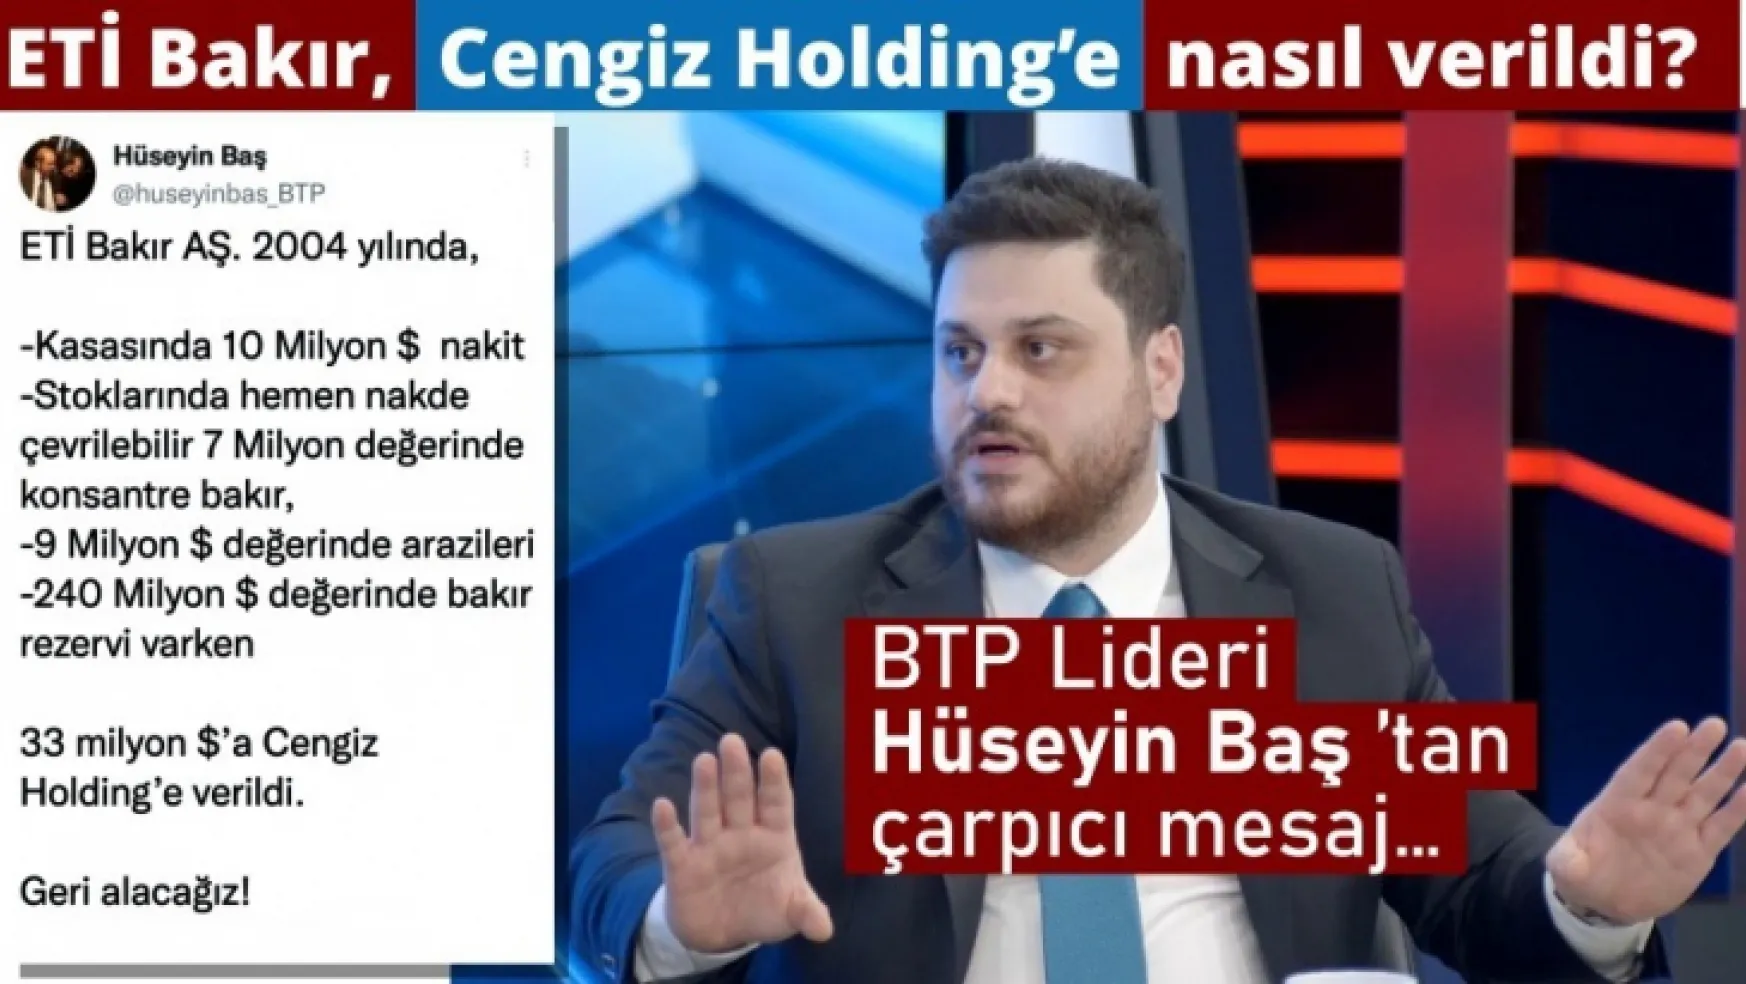 ETİ Bakır Cengiz Holding'e nasıl verildi?